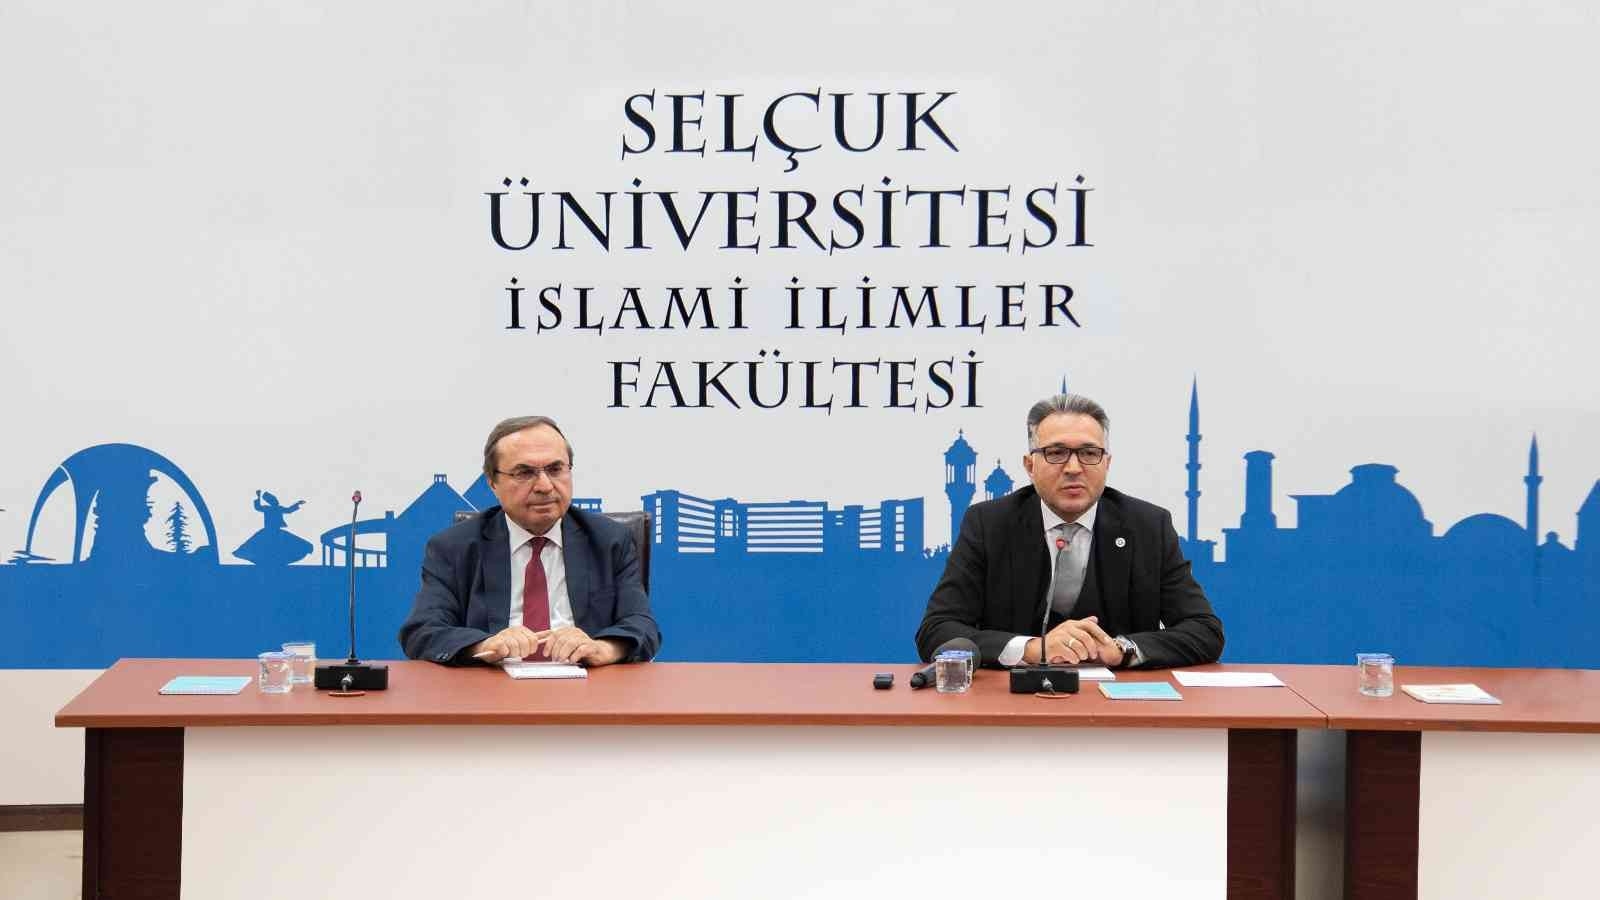 2022/09/su-islami-ilimler-fakultesinde-akademik-kurul-toplantisi-yapildi-20220922AW71-1.jpg